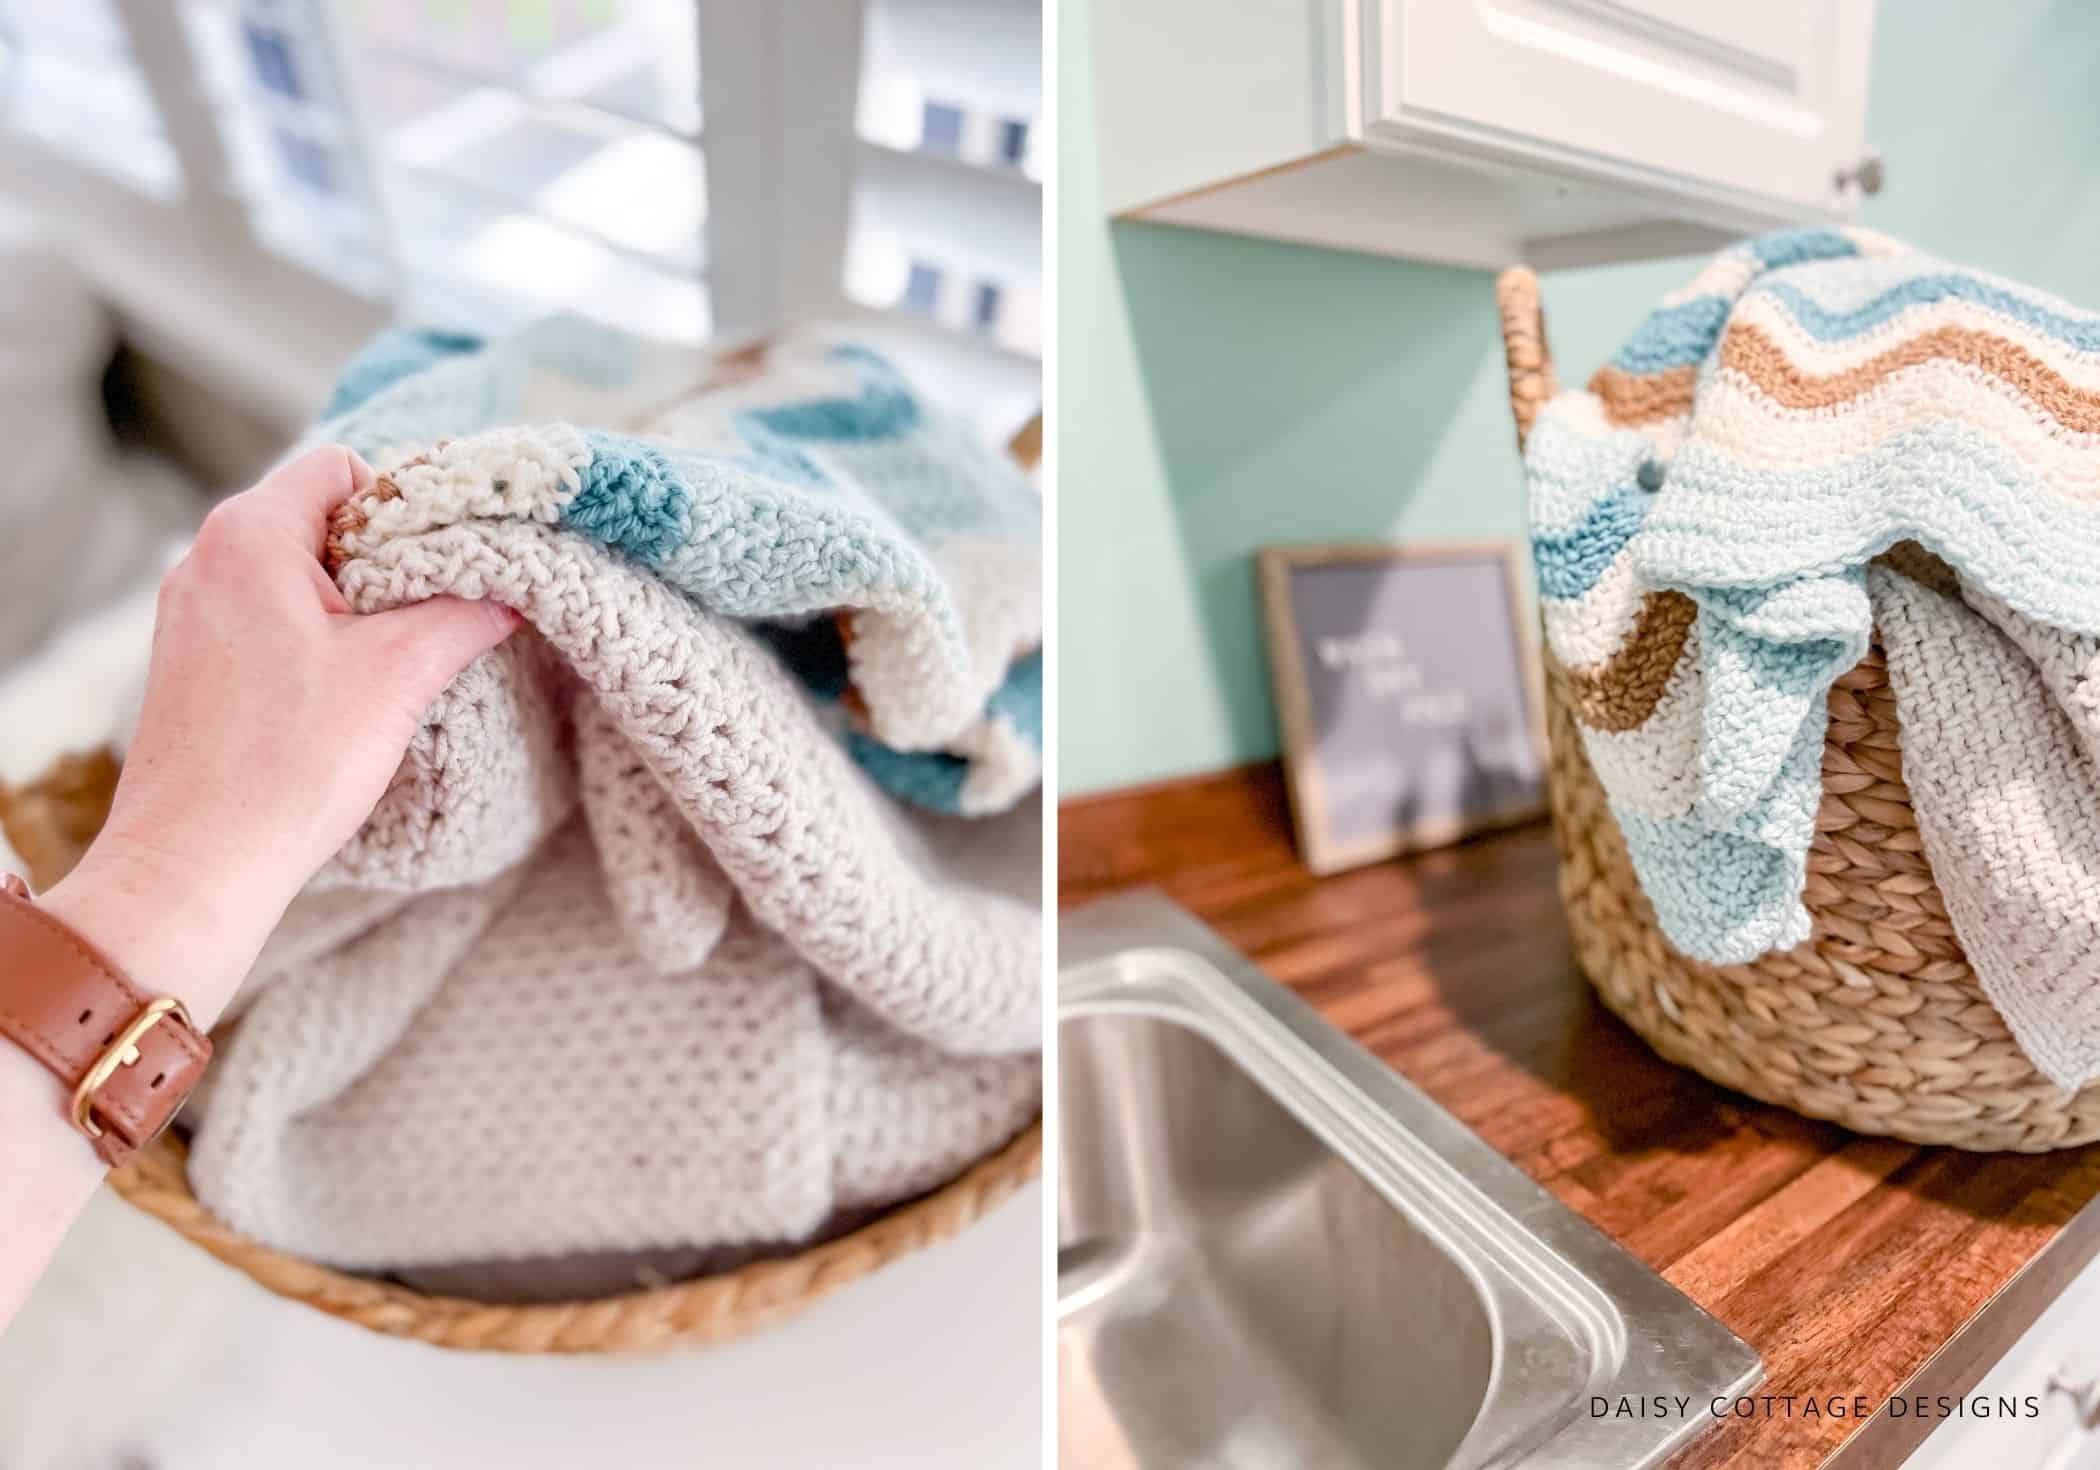 Crochet blanket in laundry room